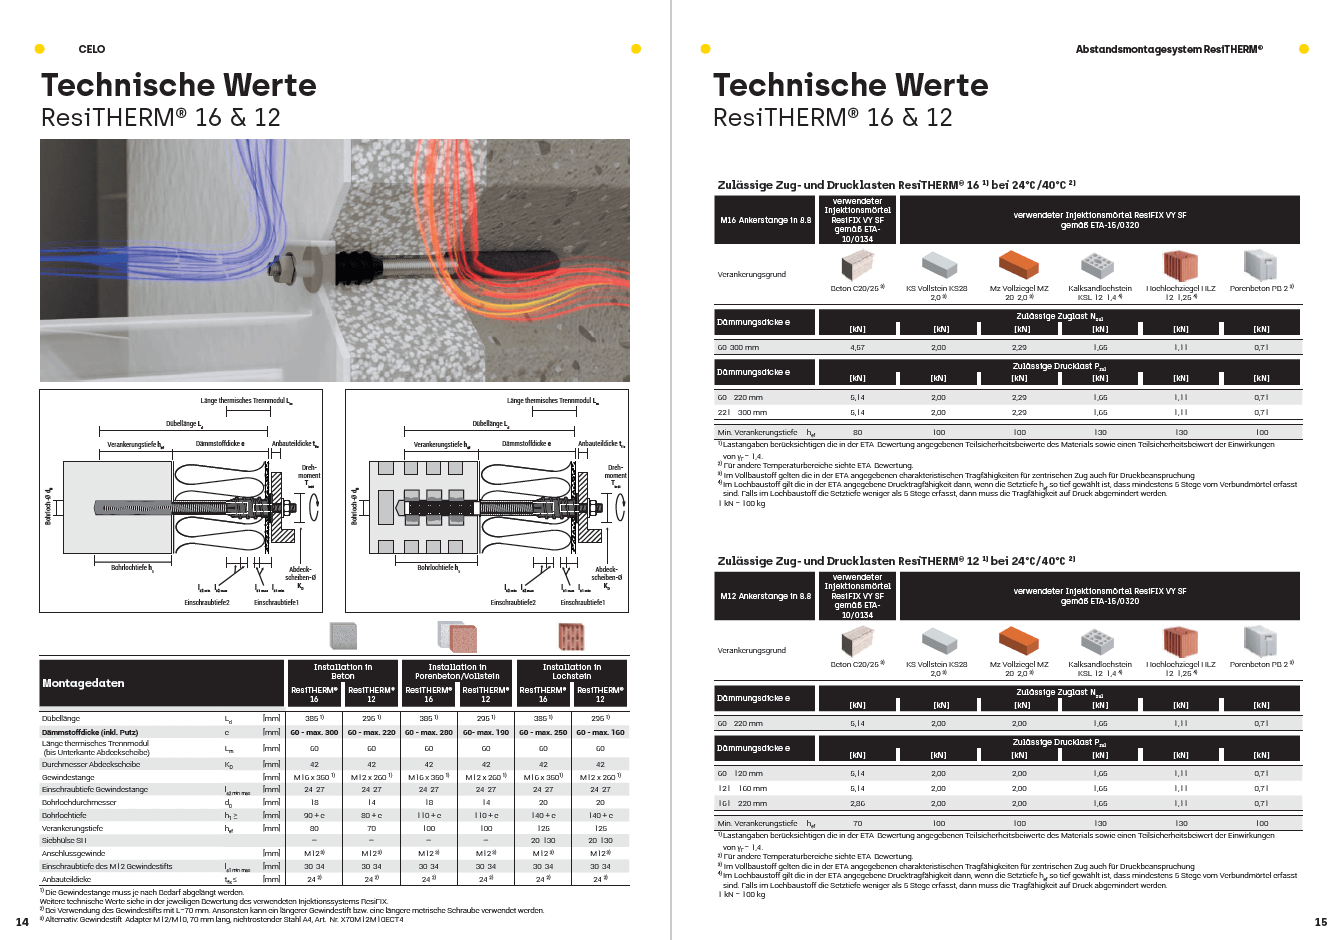 Erklärflyer ResiTHERM®:  Die Grafik der Montagedaten für das Abstandsmontagesystem ResiTHERM® in unterschiedlichen Untergründen